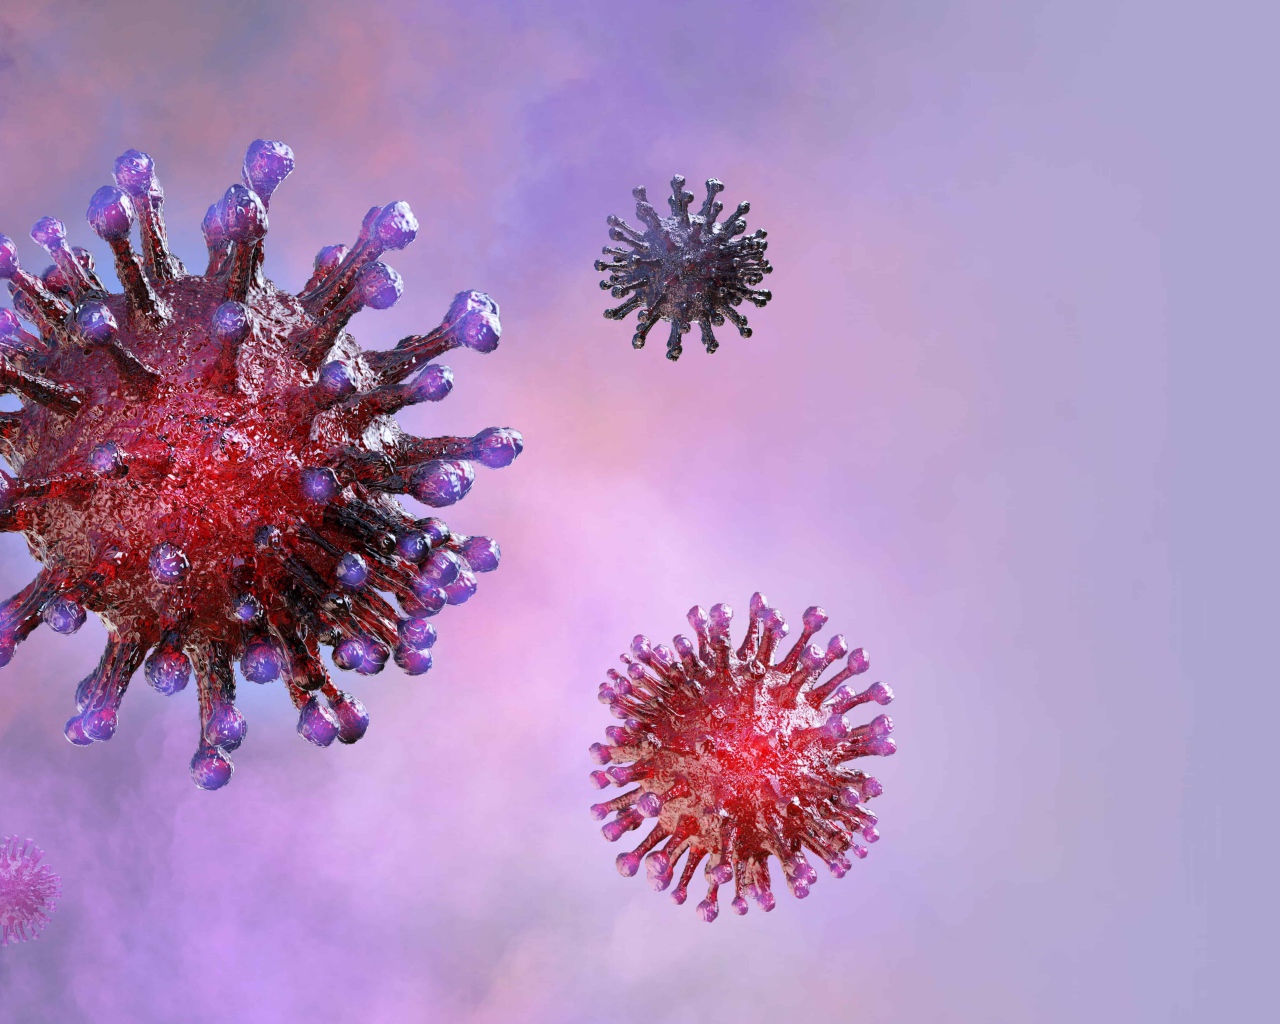 Viruses of coronavirus covid-19 on a purple background